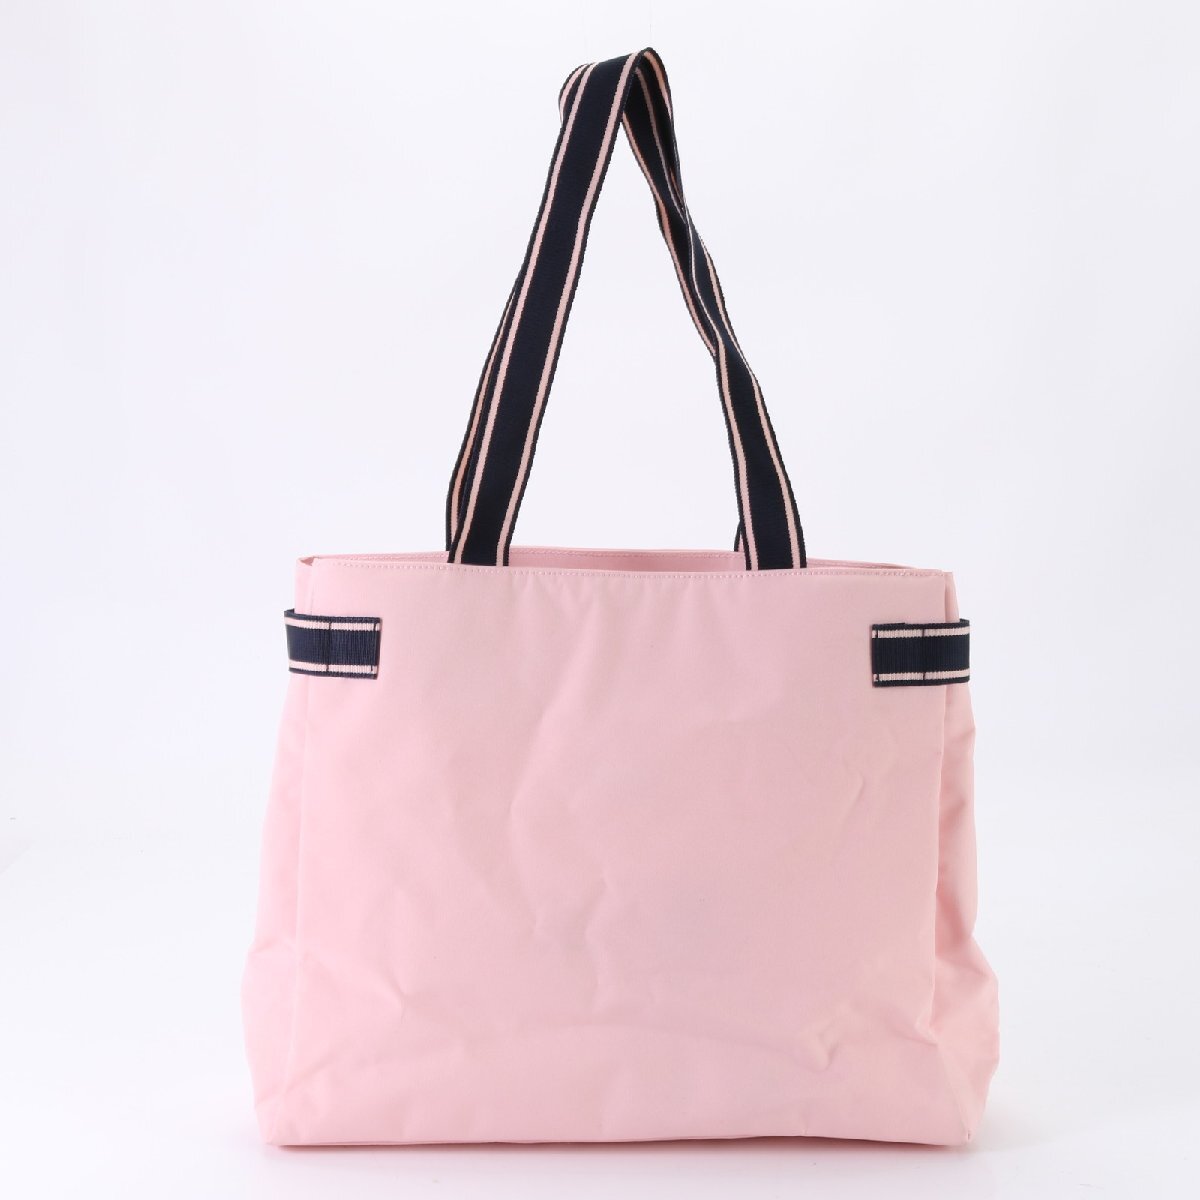 1 иен # превосходный товар # Ralph Lauren # большая сумка плечо .. плечо рука розовый A4 женский женщина EEM P13-8